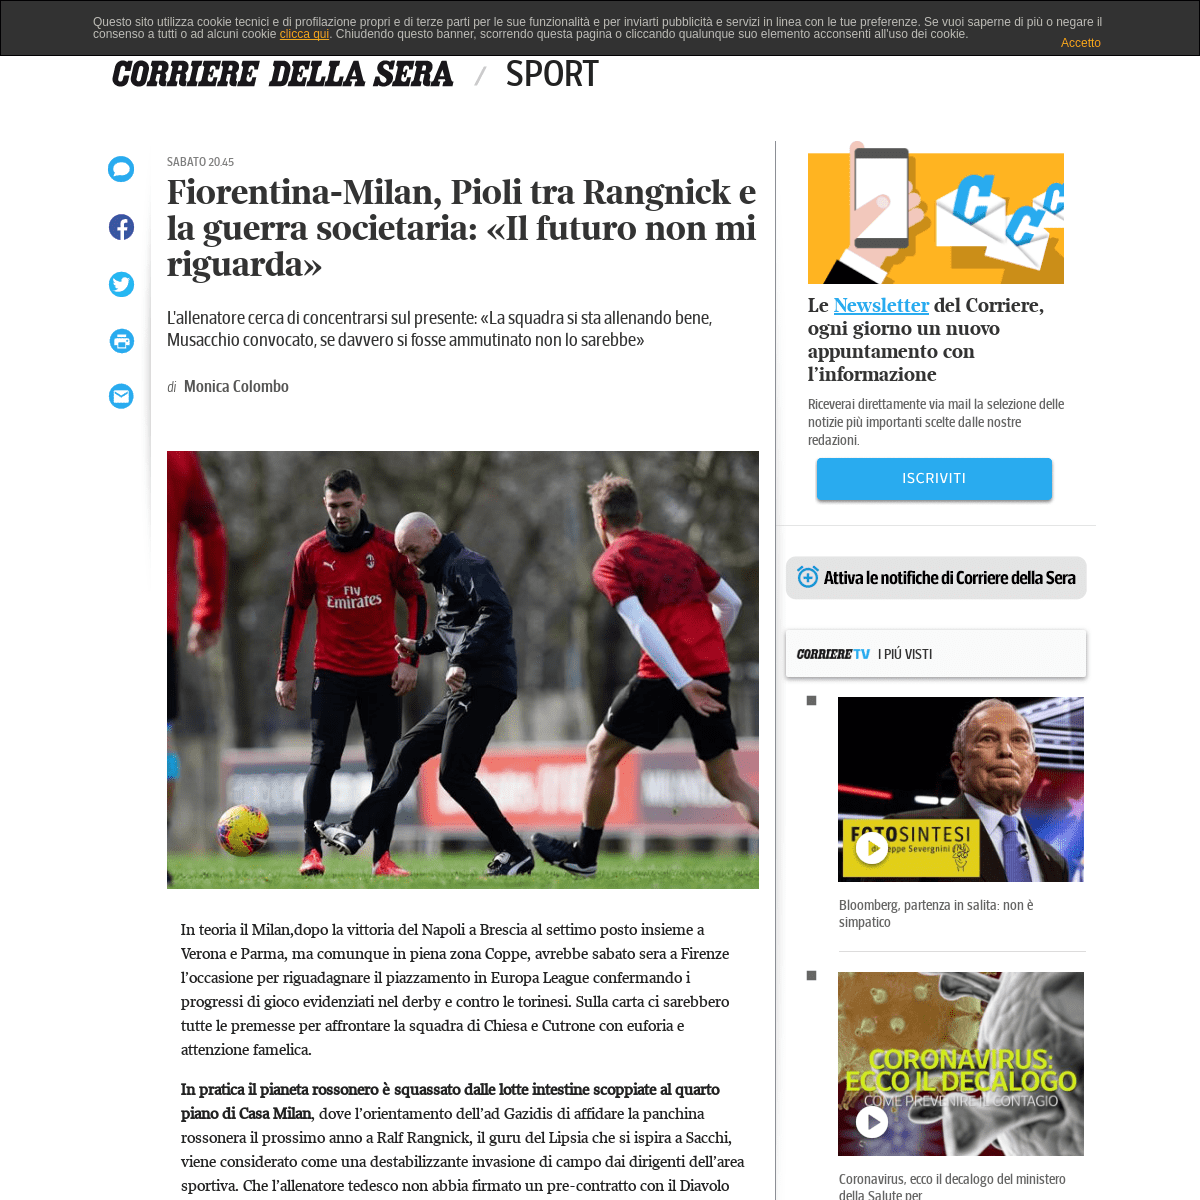 A complete backup of www.corriere.it/sport/20_febbraio_21/fiorentina-milan-pioli-rangnick-guerra-societaria-il-futuro-non-mi-rig